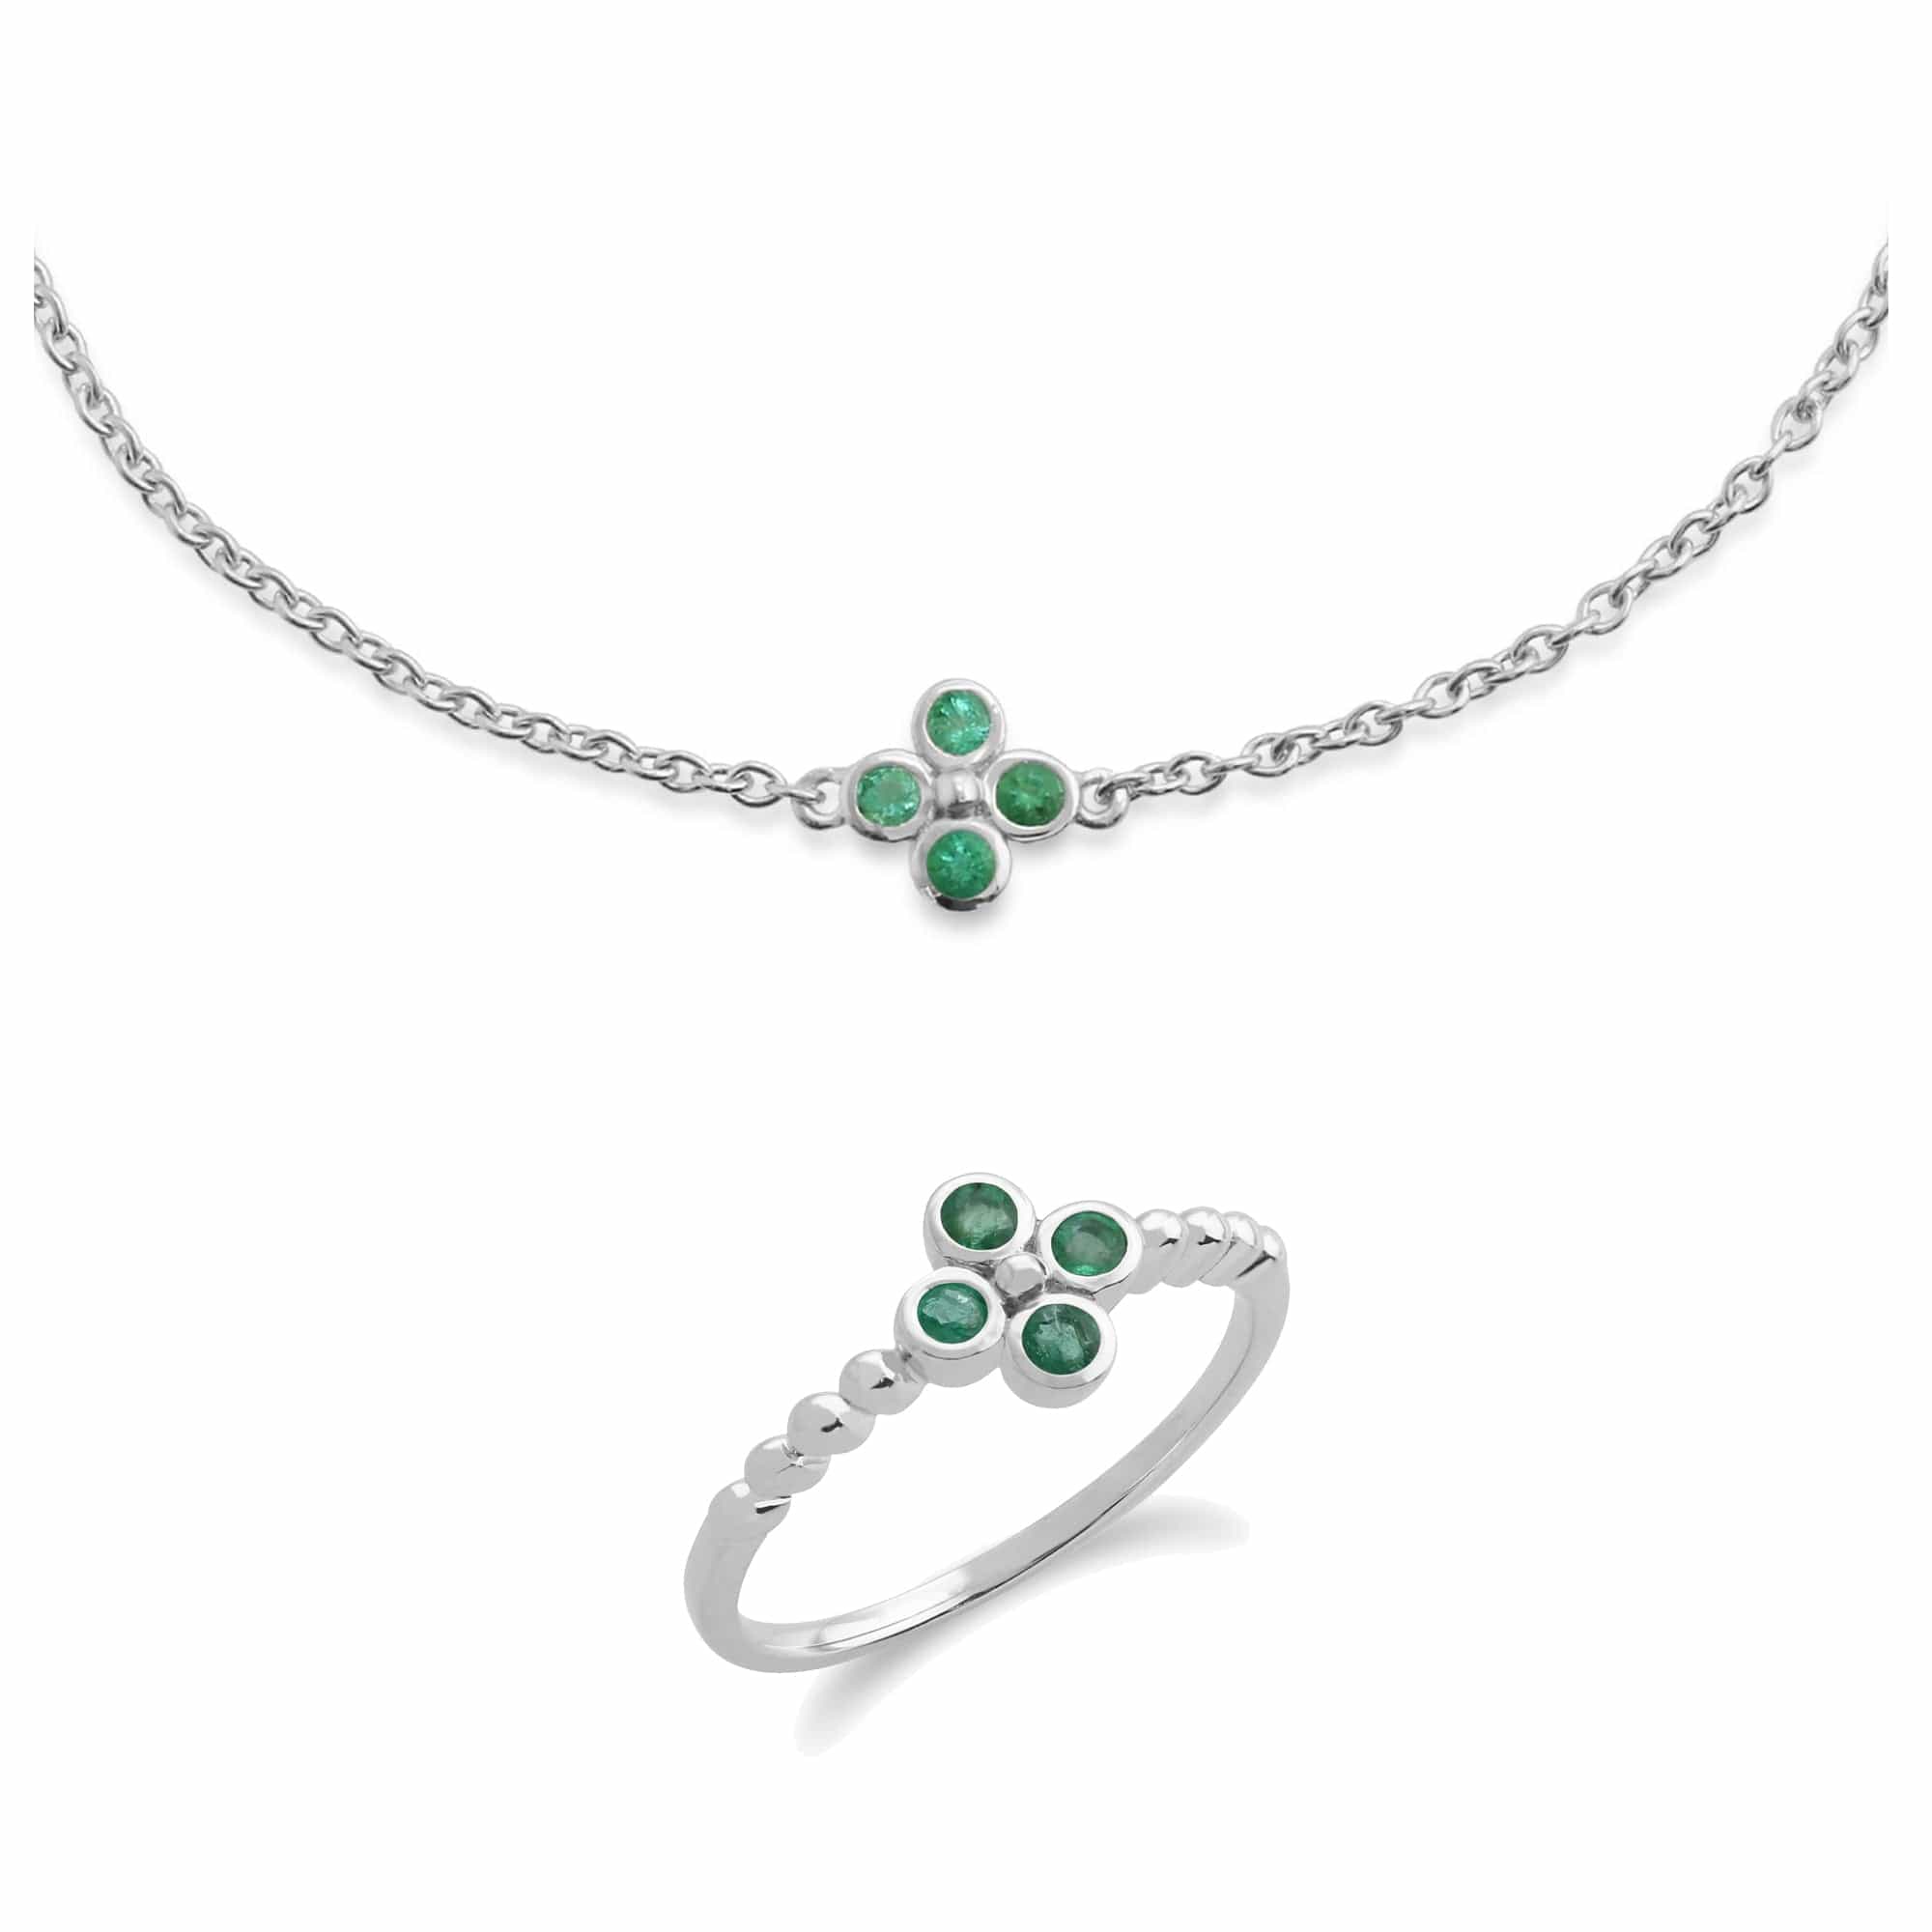 270L009701925-270R048201925 Floral Round Emerald Clover Bracelet & Ring Set in 925 Sterling Silver 1